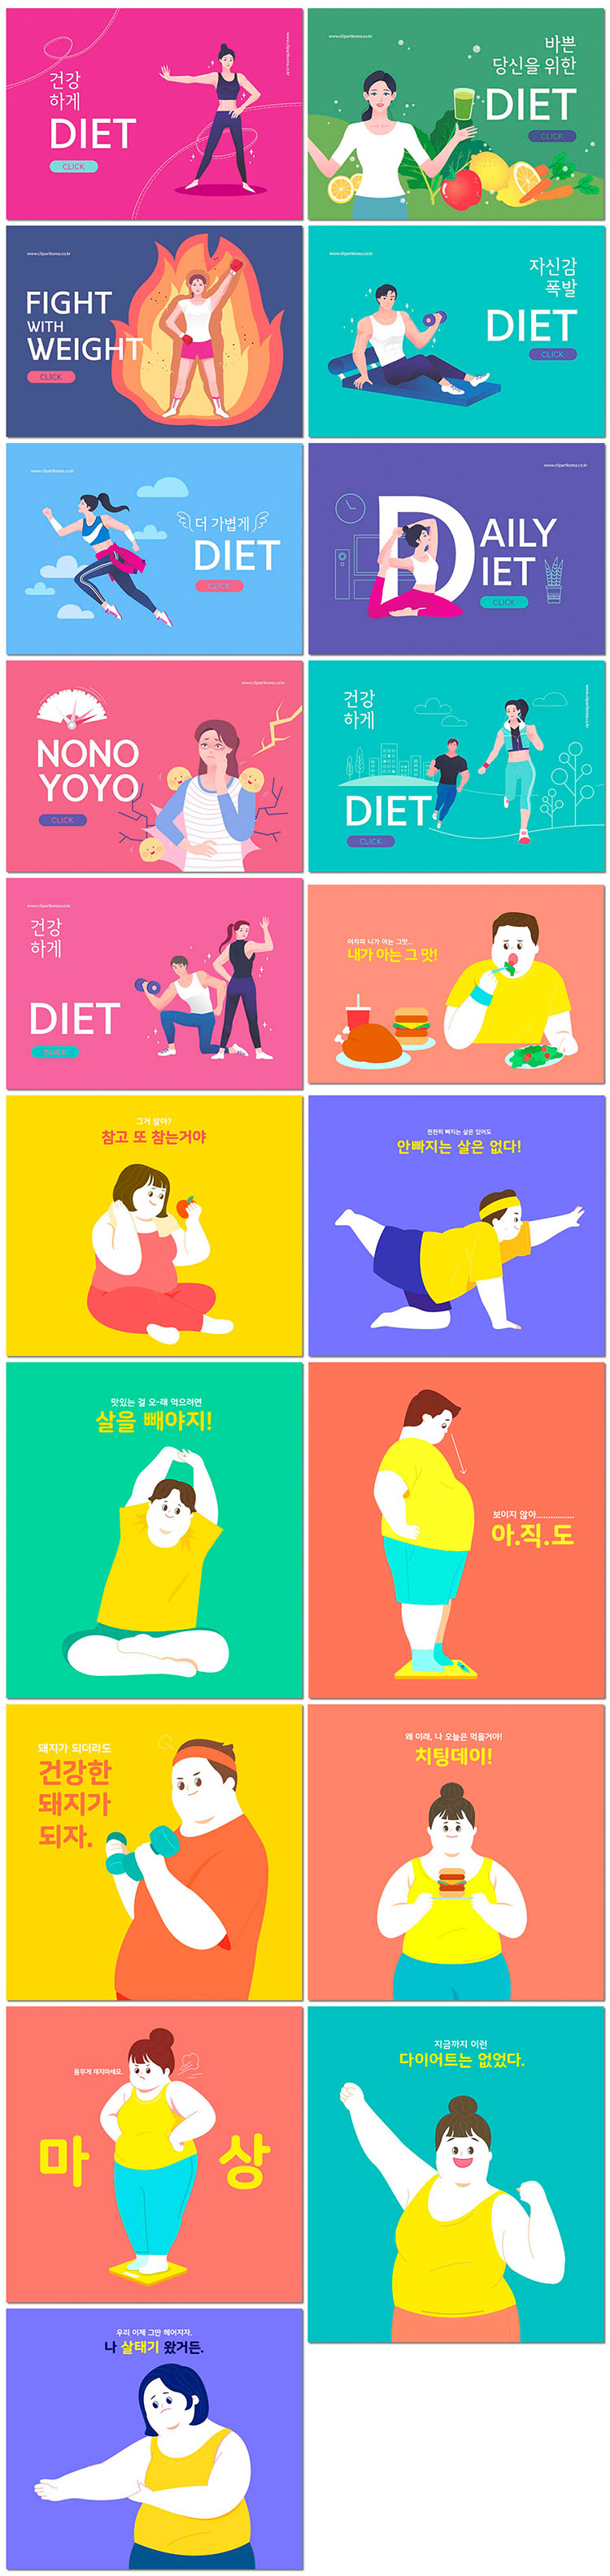 锻炼健身运动减肥胖女孩饮食健康卡通插图插画海报设计模板素材